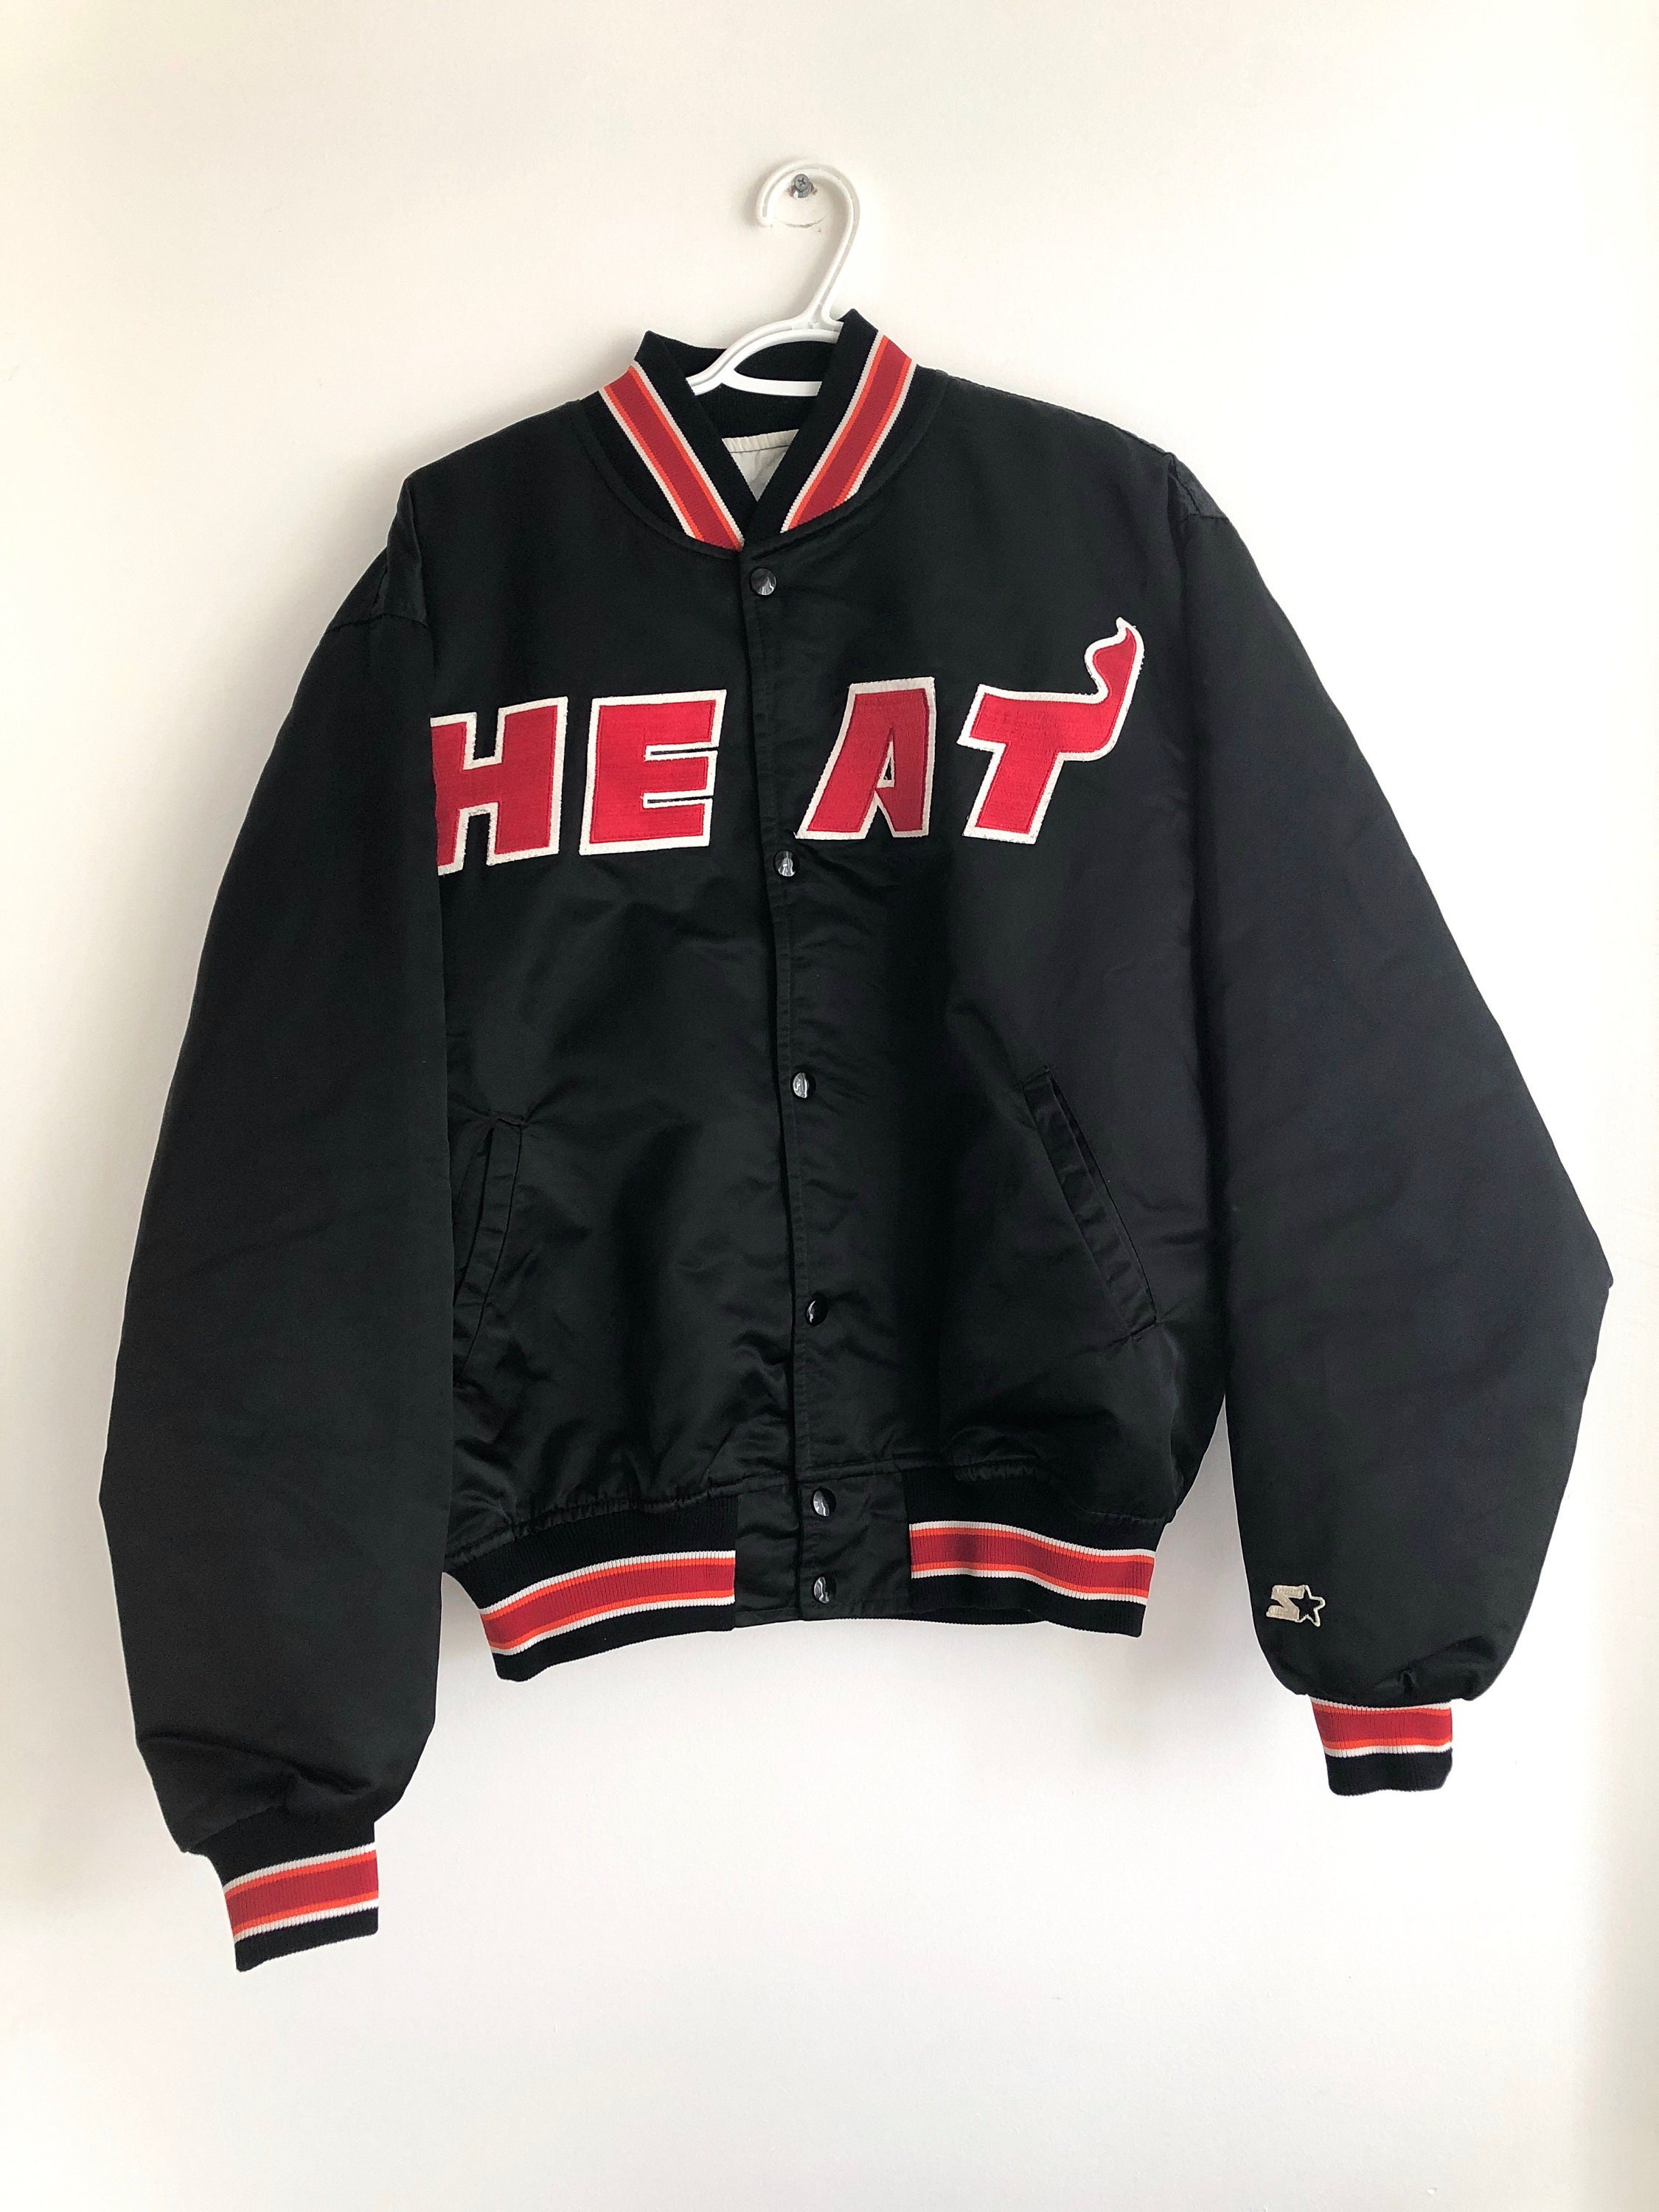 STARTER, Jackets & Coats, Vintage Miami Heat Starter Varsity Jacket